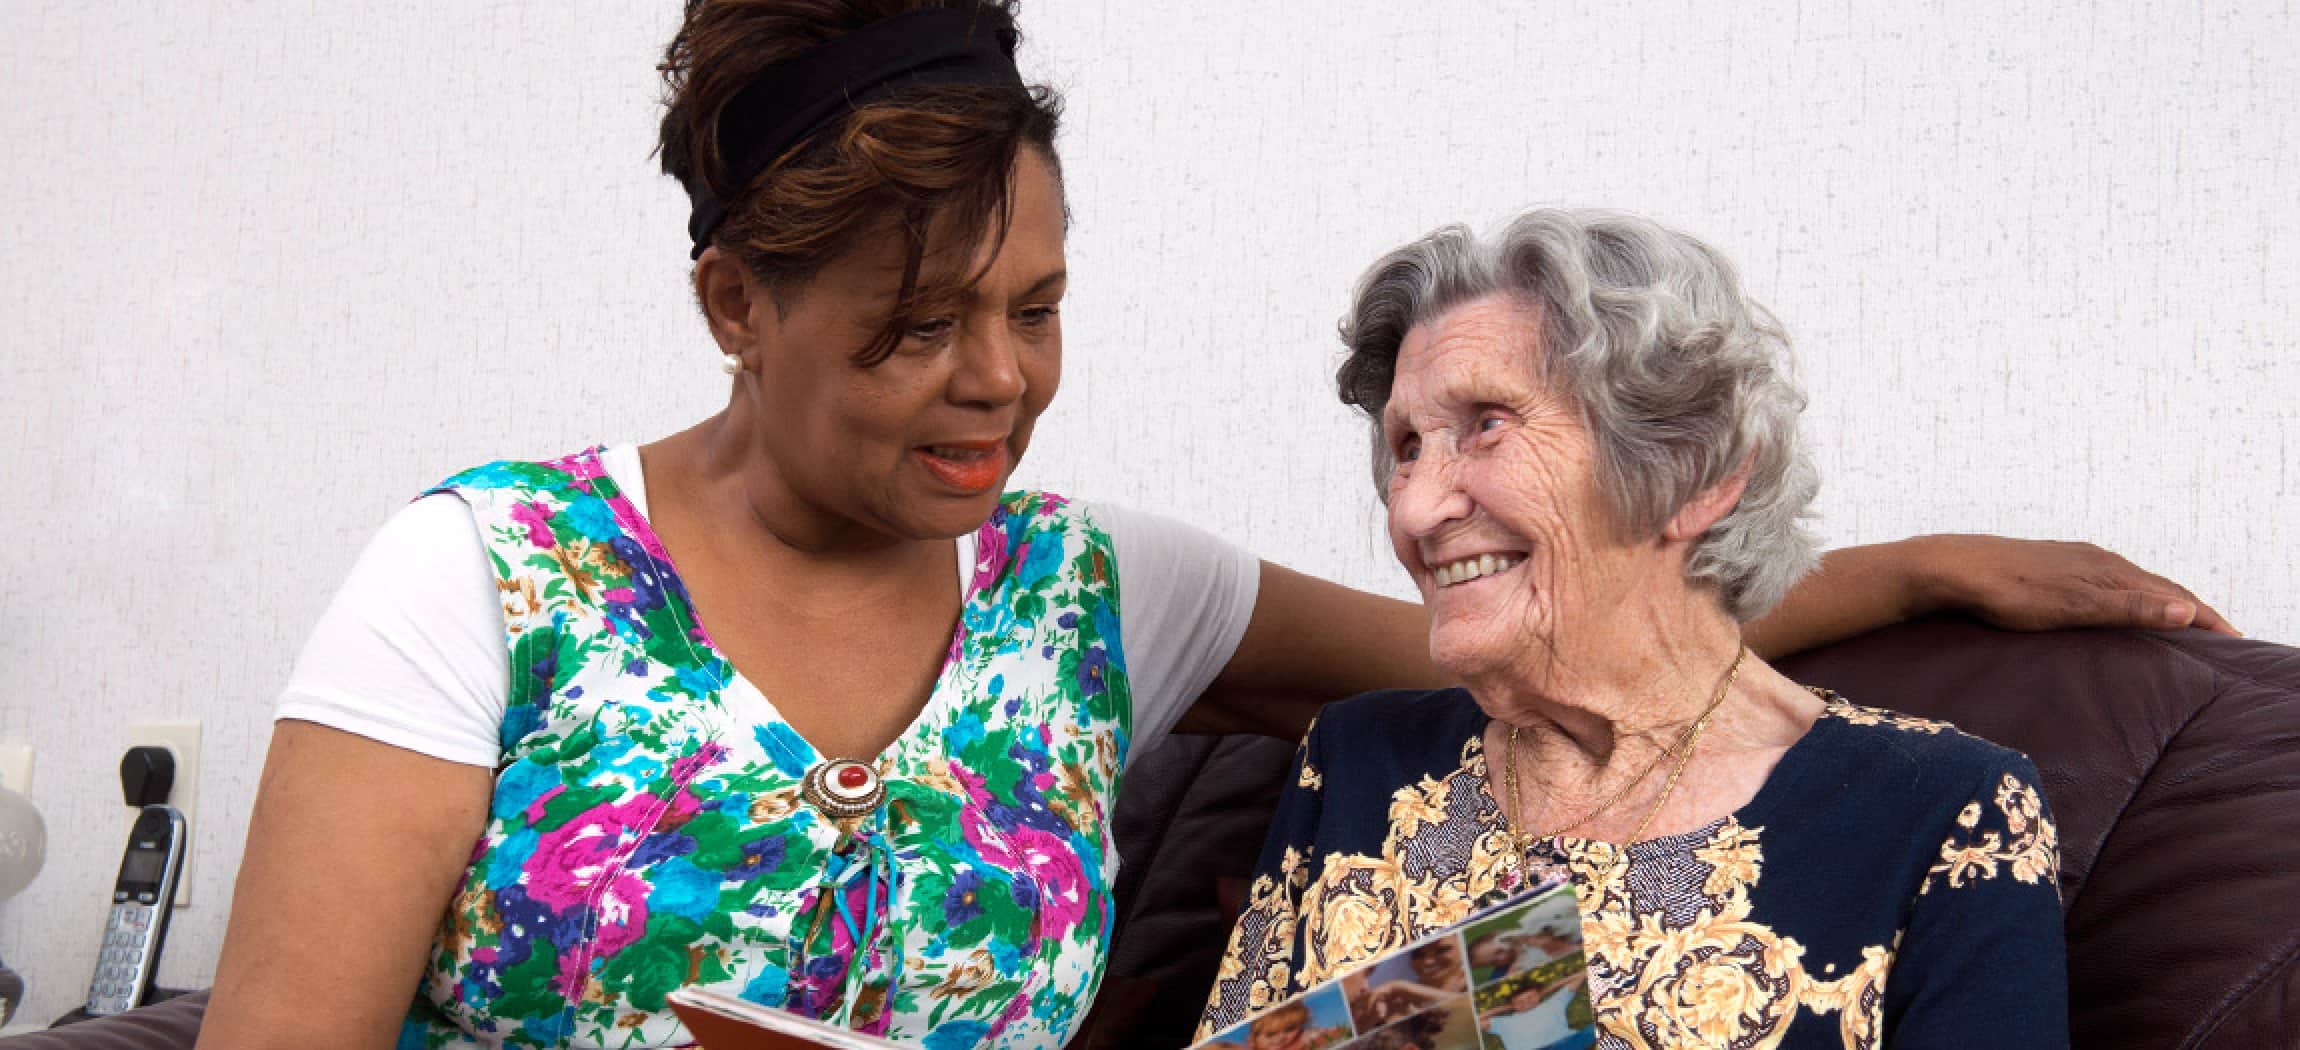 Klassiek ogende oude vrouw leest een tijdschrift samen met andere vrouw met getinte huidskleur